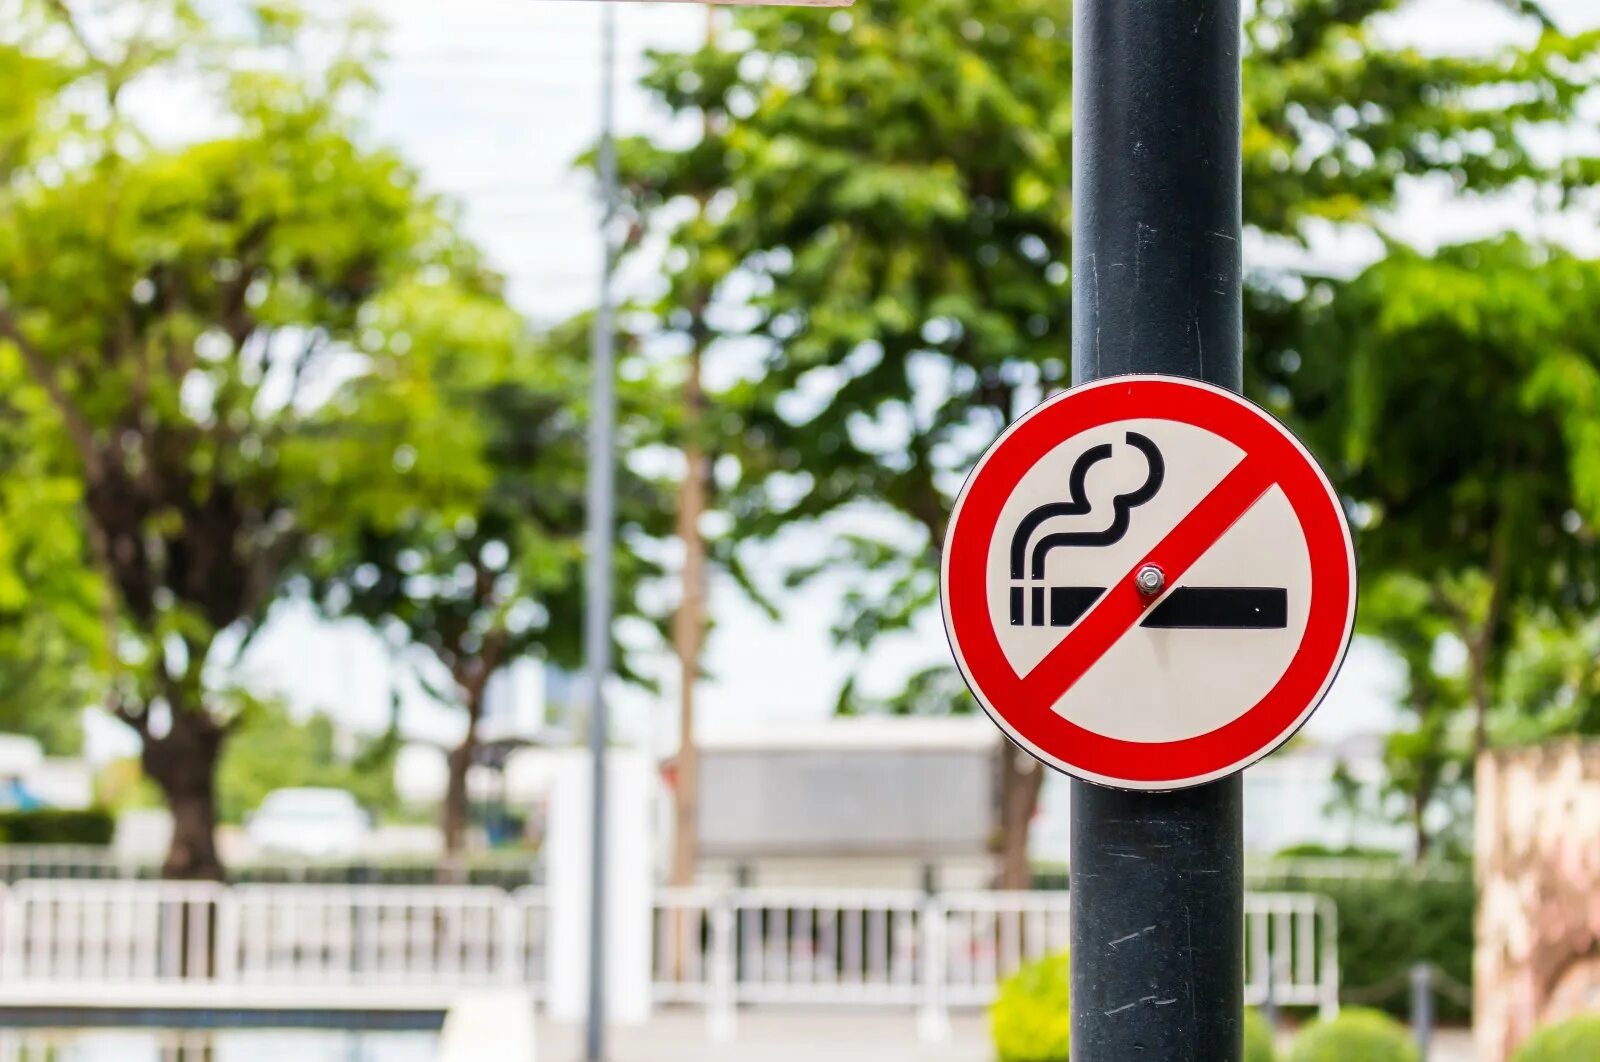 Non public. You mustn't Smoke. You mustn't Smoke here. Знак don't Smoke. Картинки i don't Smoke.